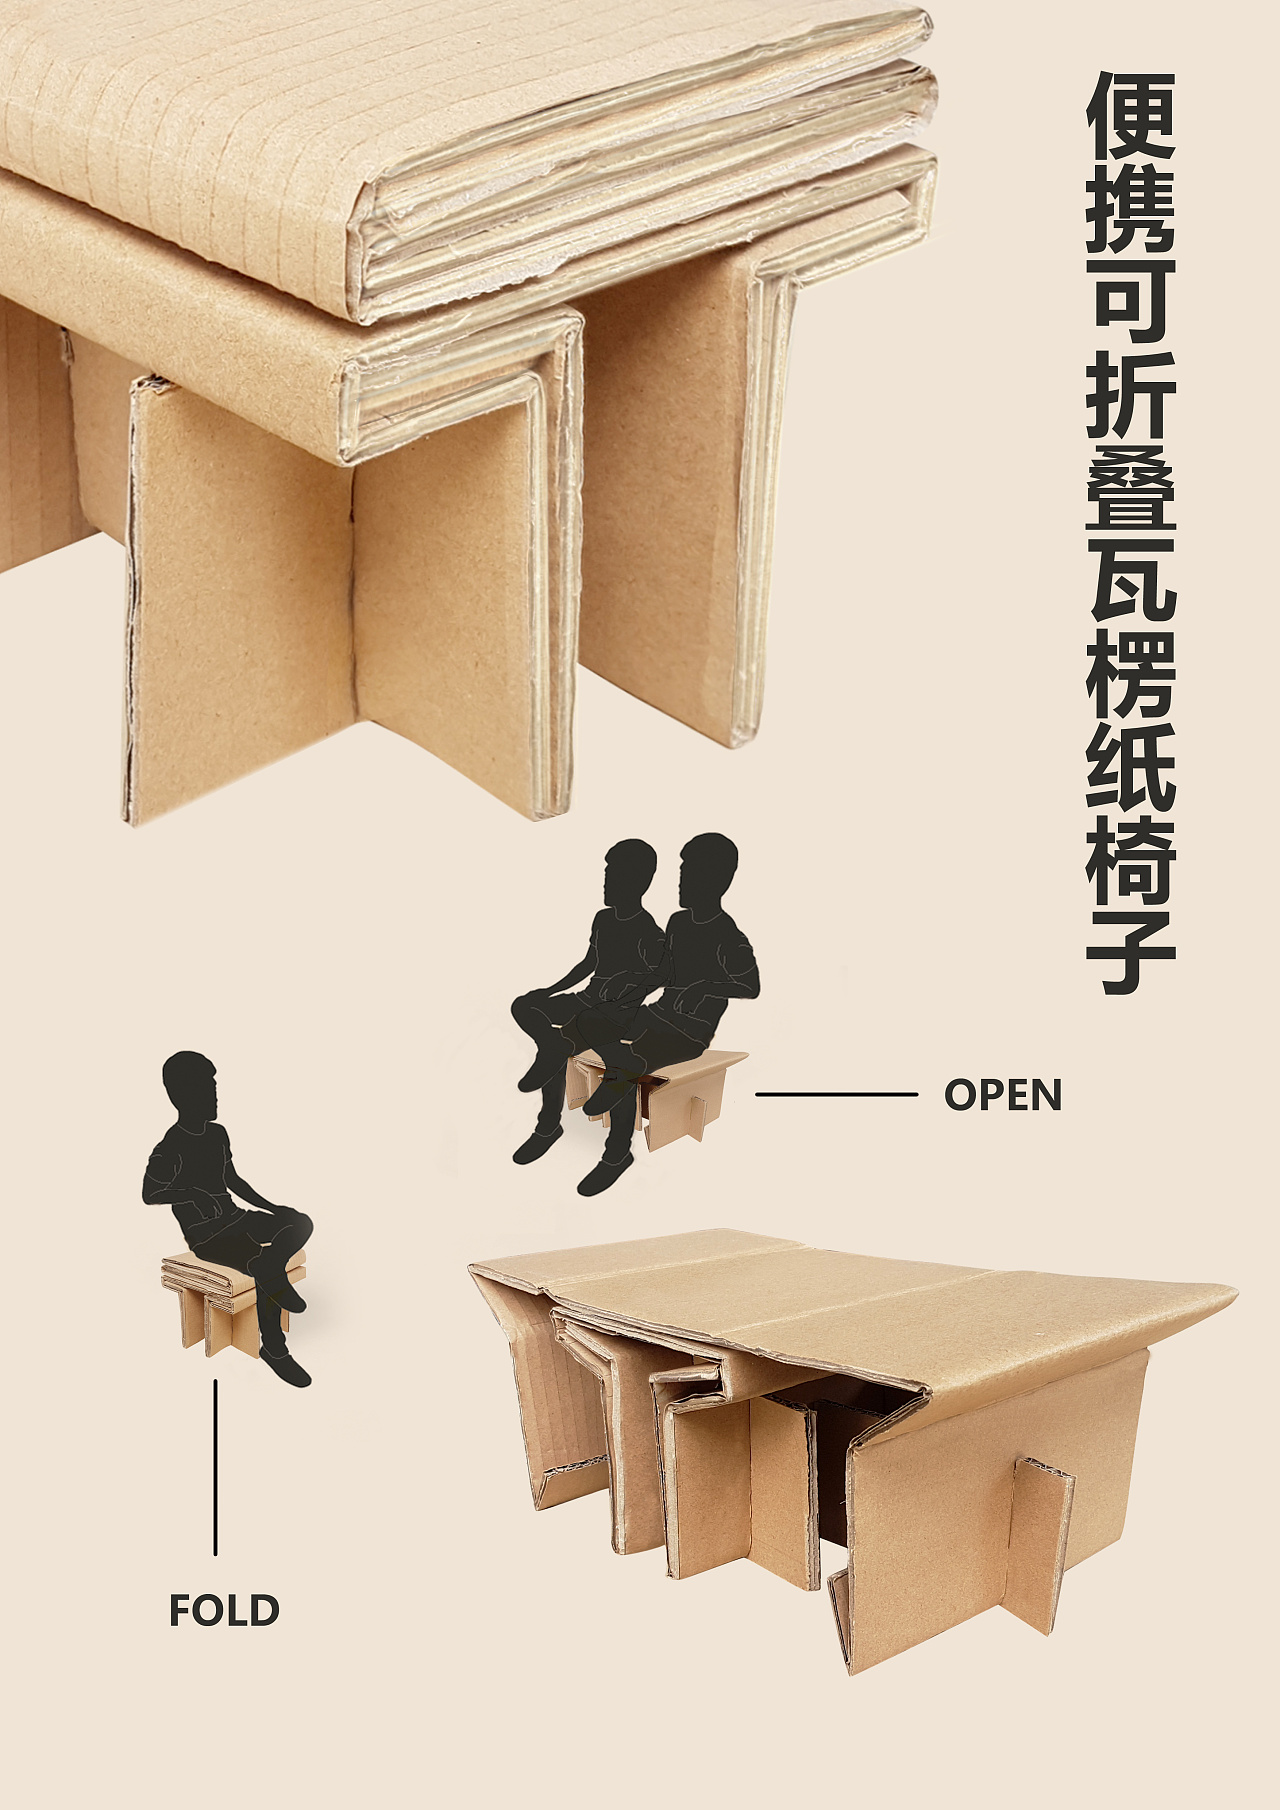 记录自己在大学期间的作品:便携可折叠瓦楞纸椅子